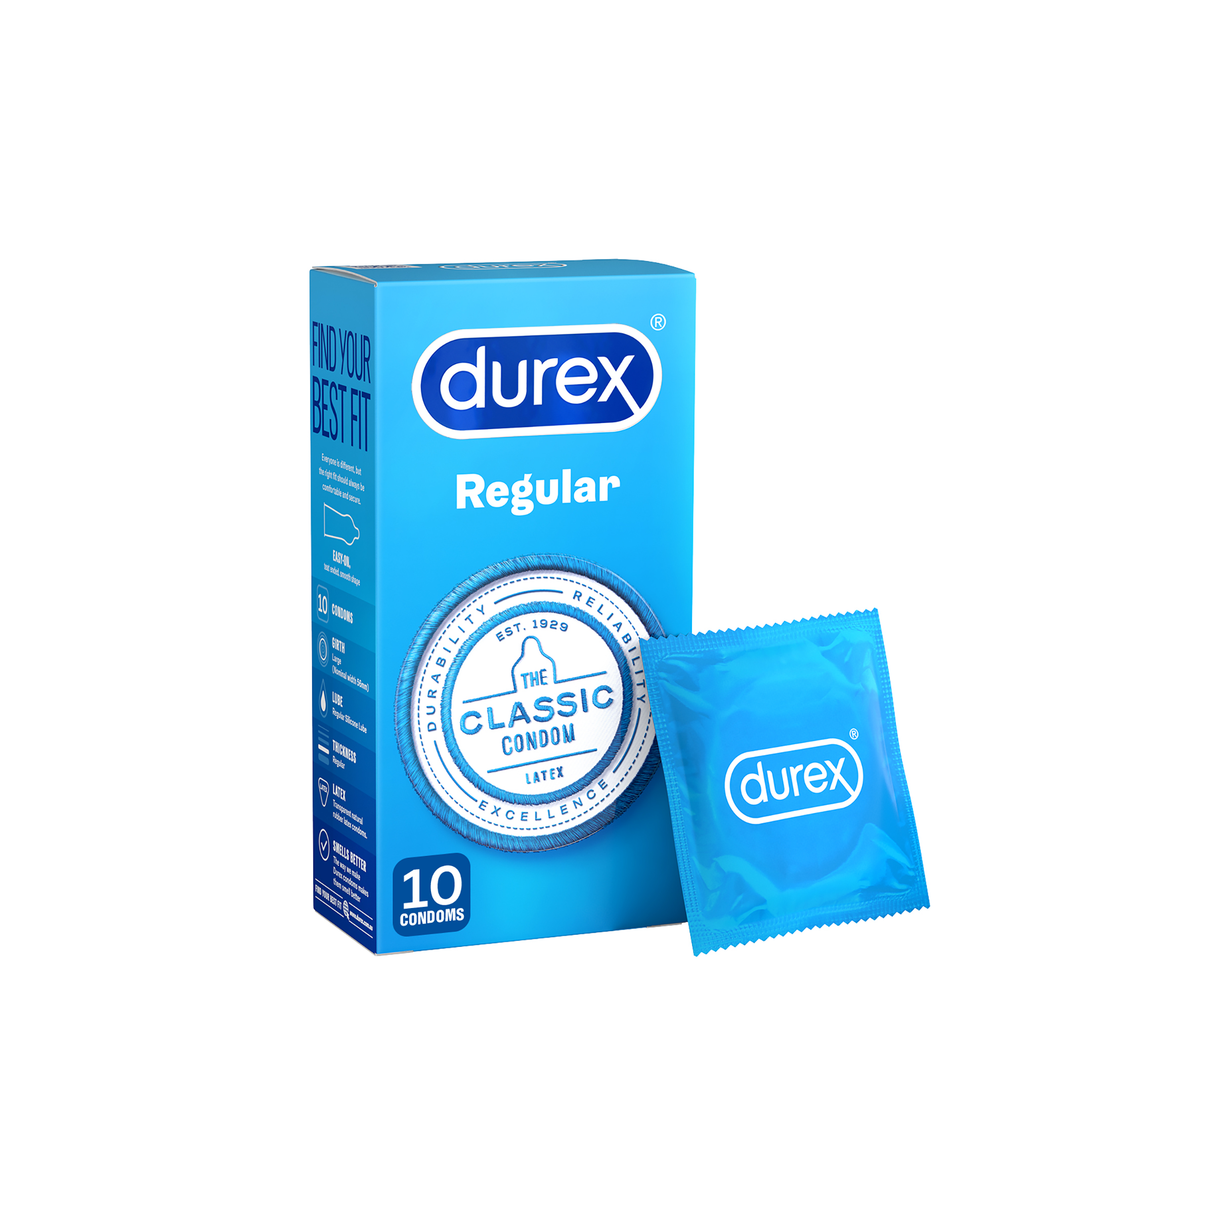 Durex Original Regular Condoms 10 Pack